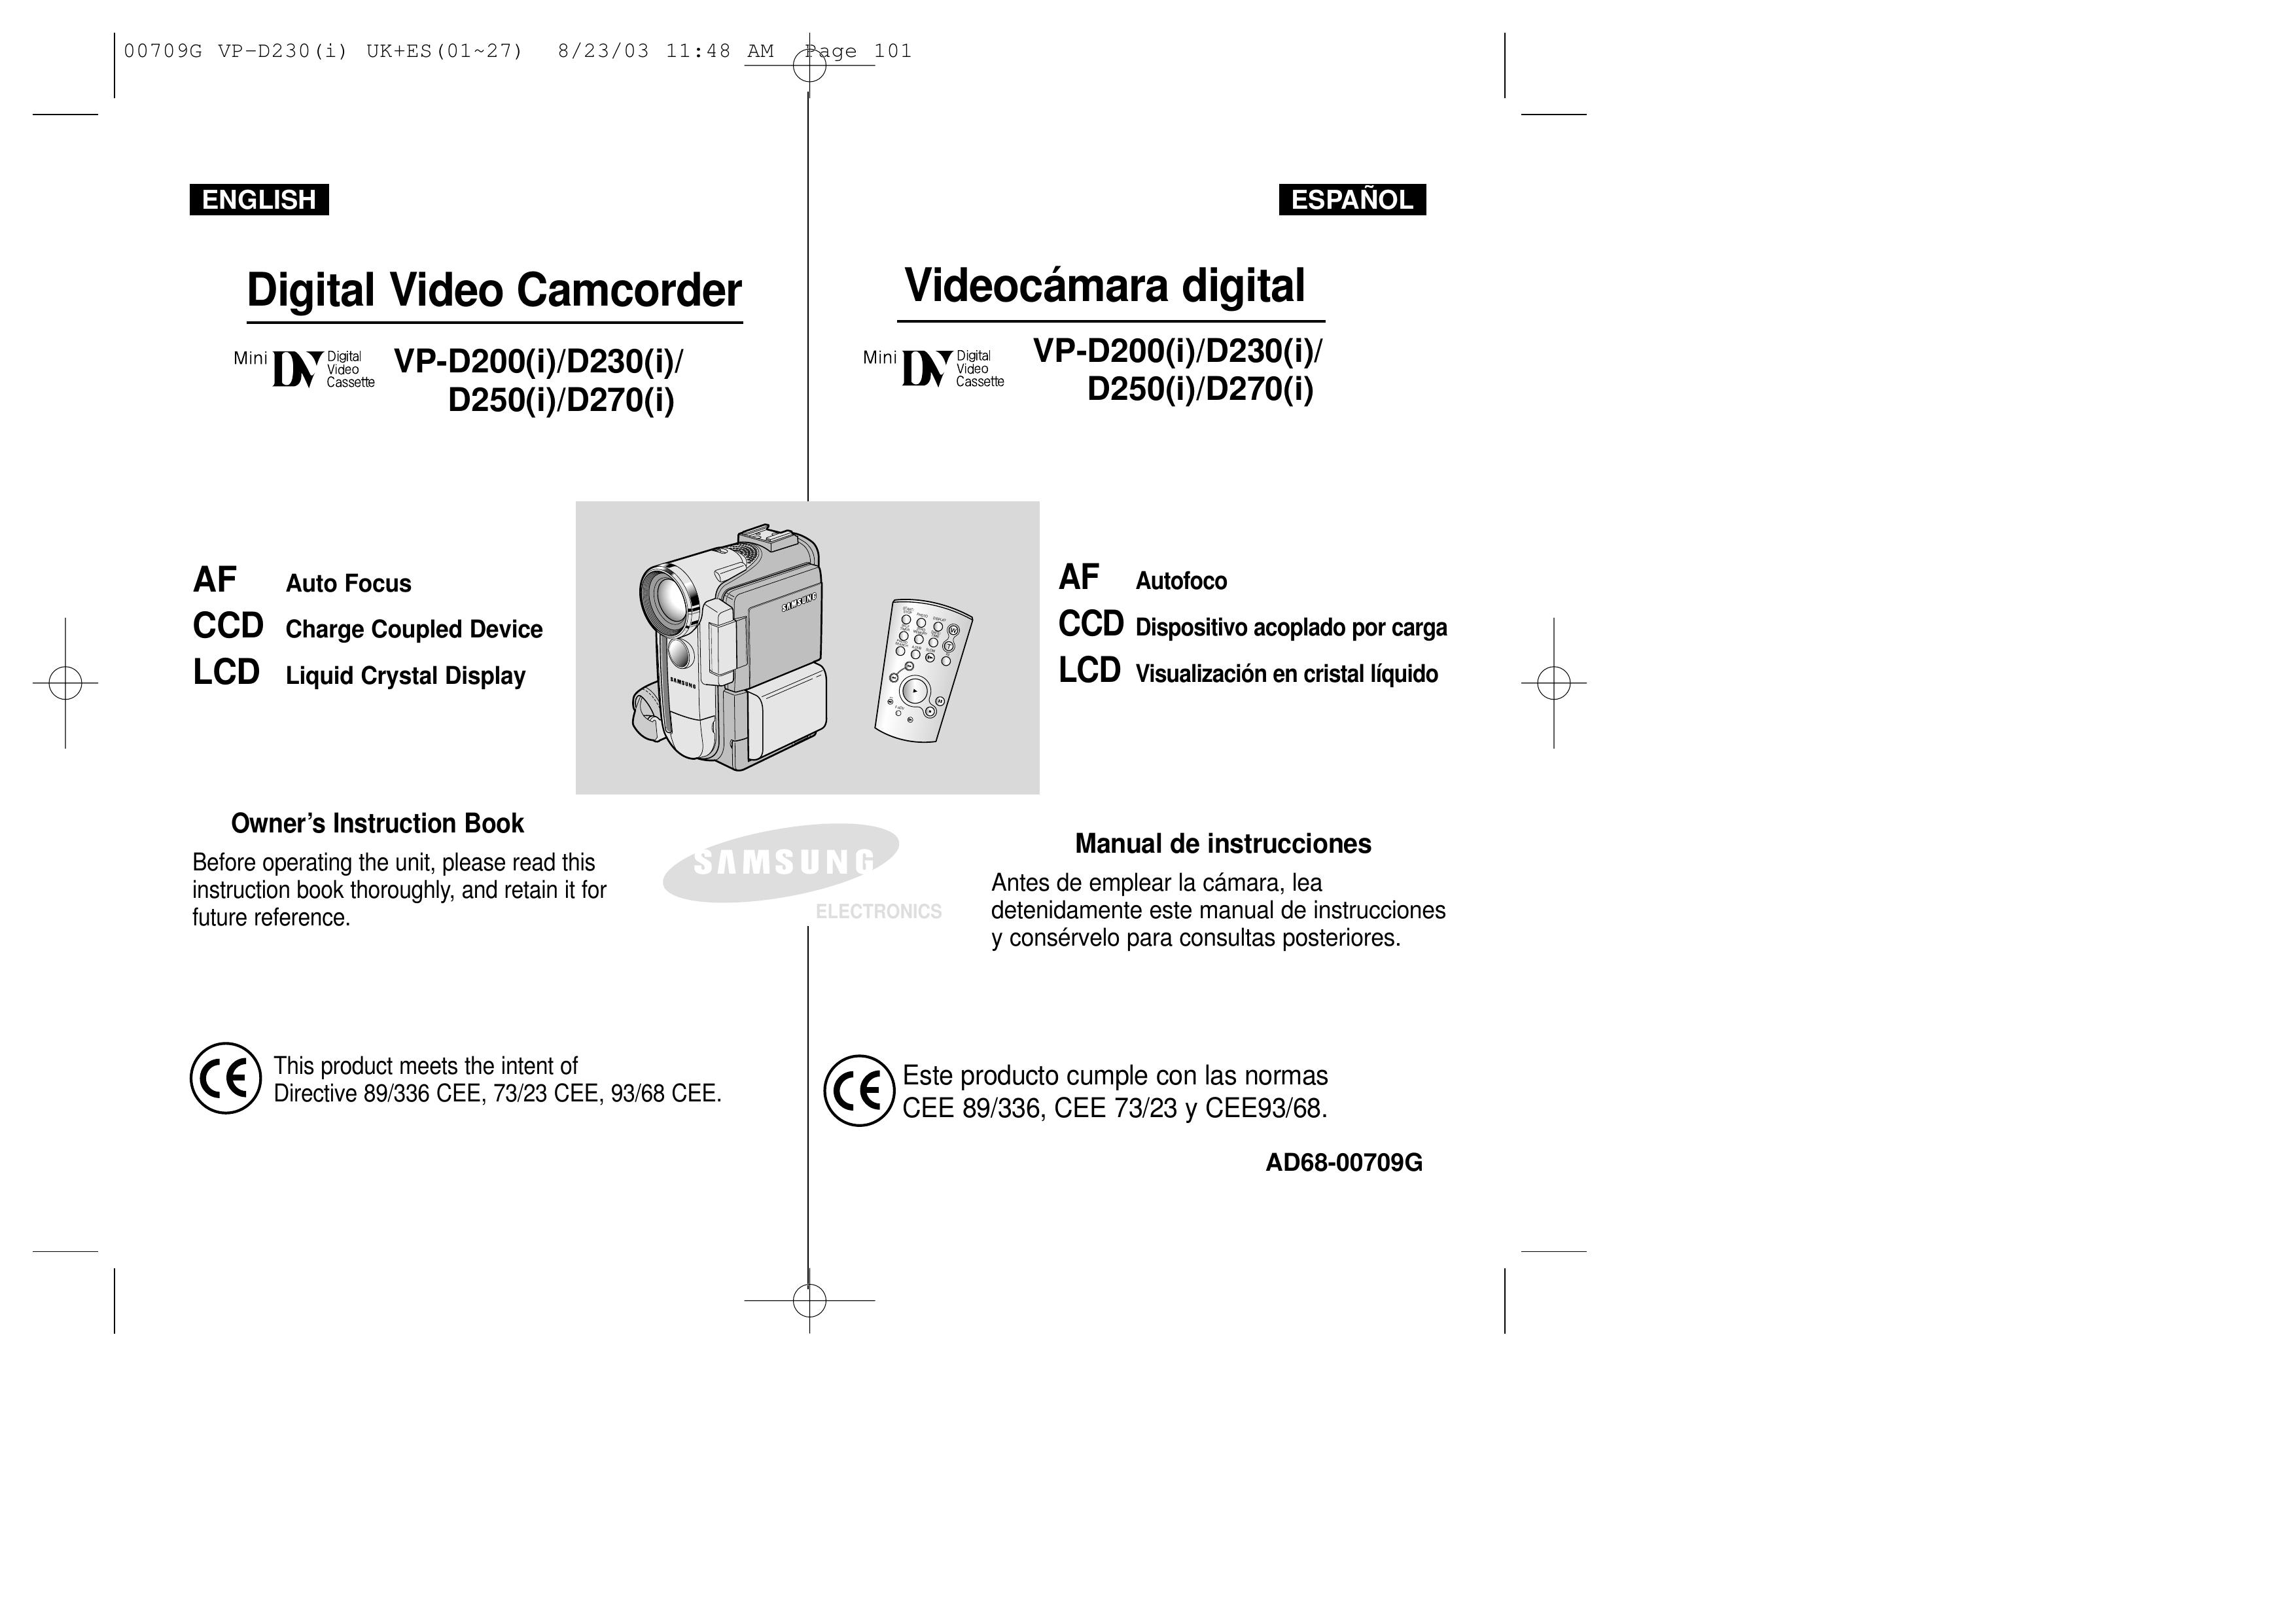 Samsung D250(i) Camcorder User Manual